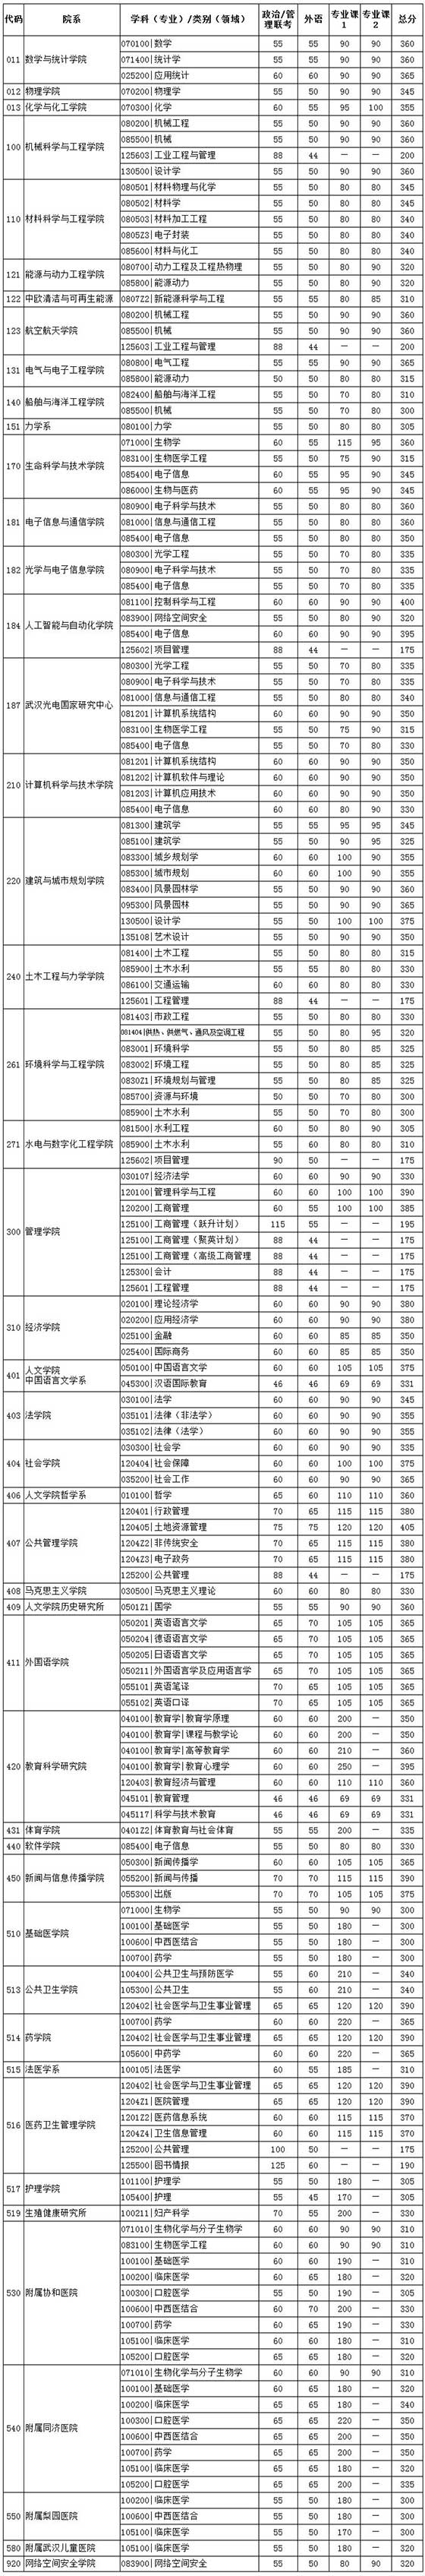 华中科技大学2020研究生复试分数线.jpg